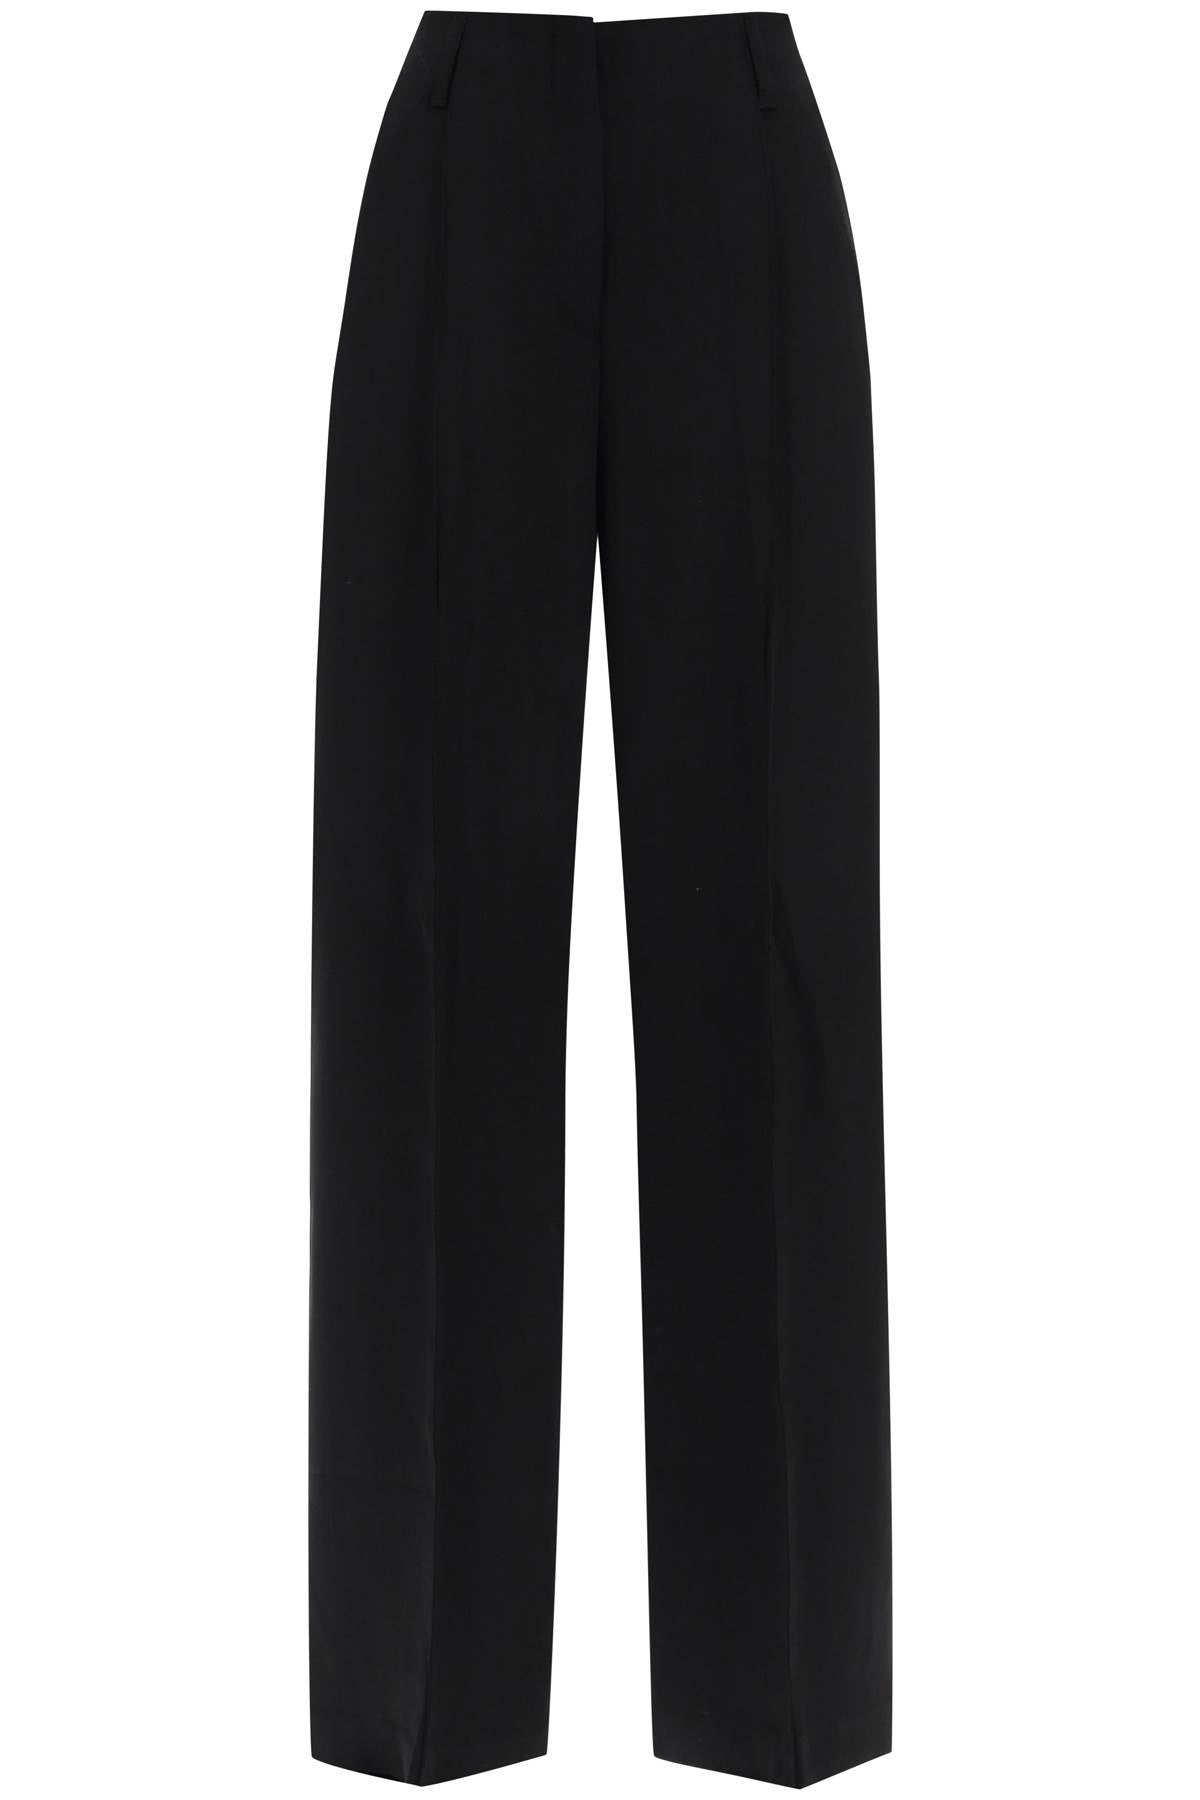 Acne Studios Wool Blend Tailored Pants   Black